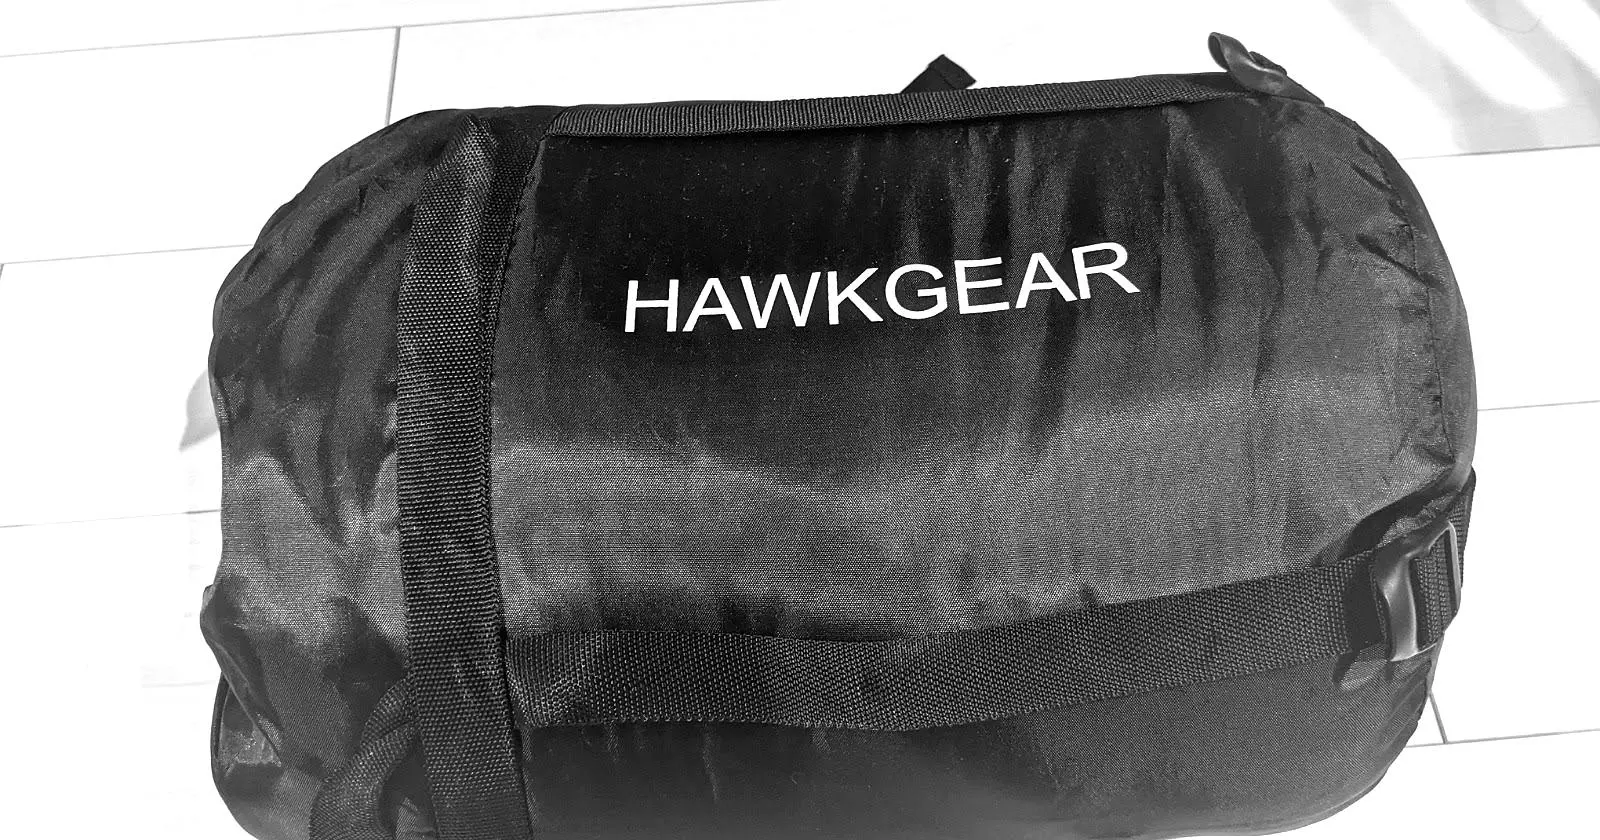 HAWKGEAR（ホークギア）の激安寝袋ってぶっちゃけどうなの？実際にレビューしてみた  TAKIBI（タキビ）  キャンプ・グランピングなど アウトドアの総合情報サイト